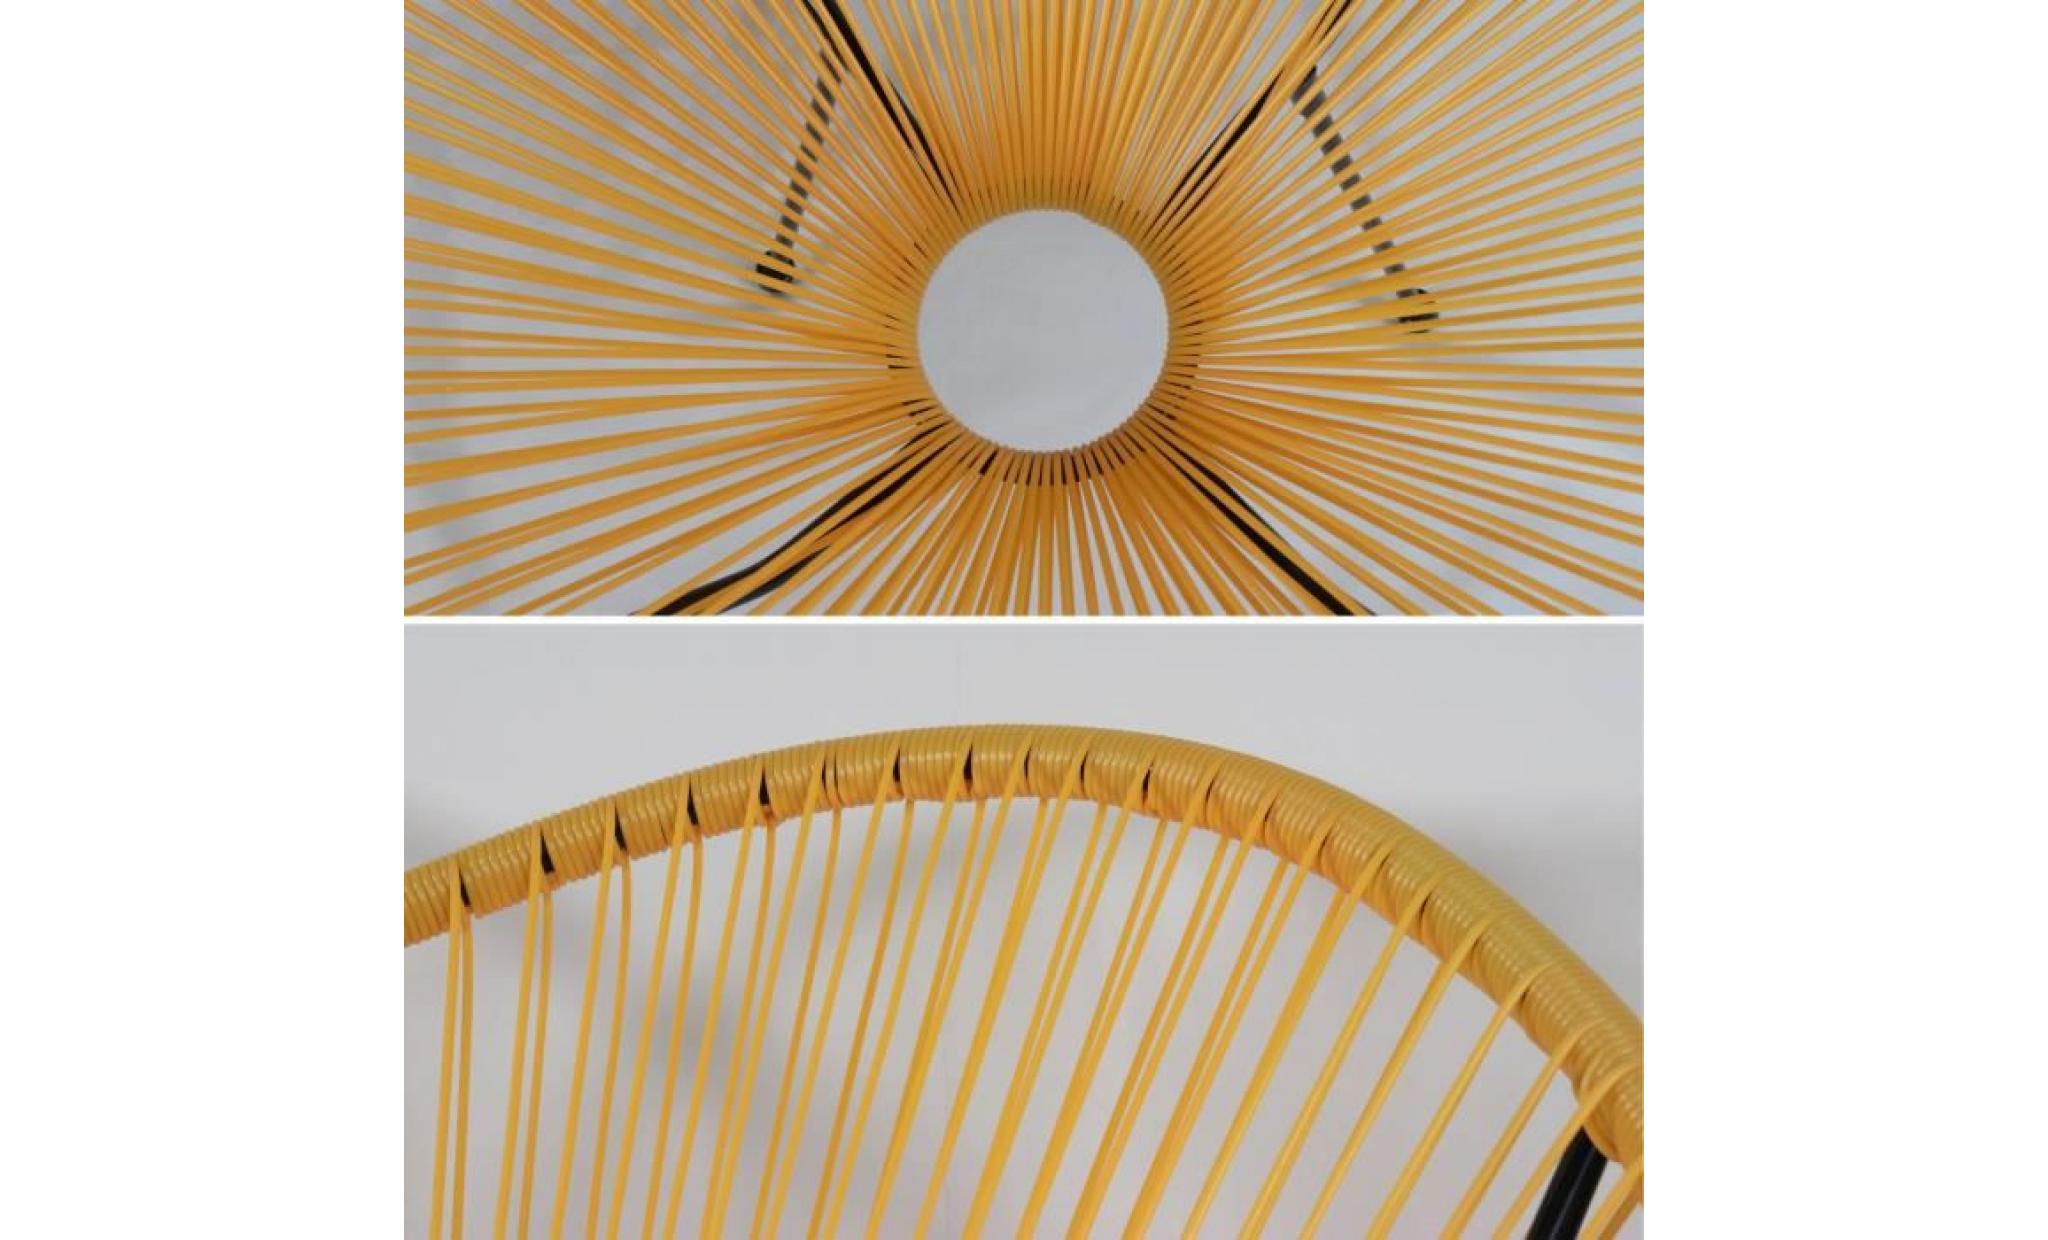 fauteuil acapulco forme d'oeuf   jaune   fauteuil 4 pieds design rétro, cordage plastique, intérieur / extérieur pas cher